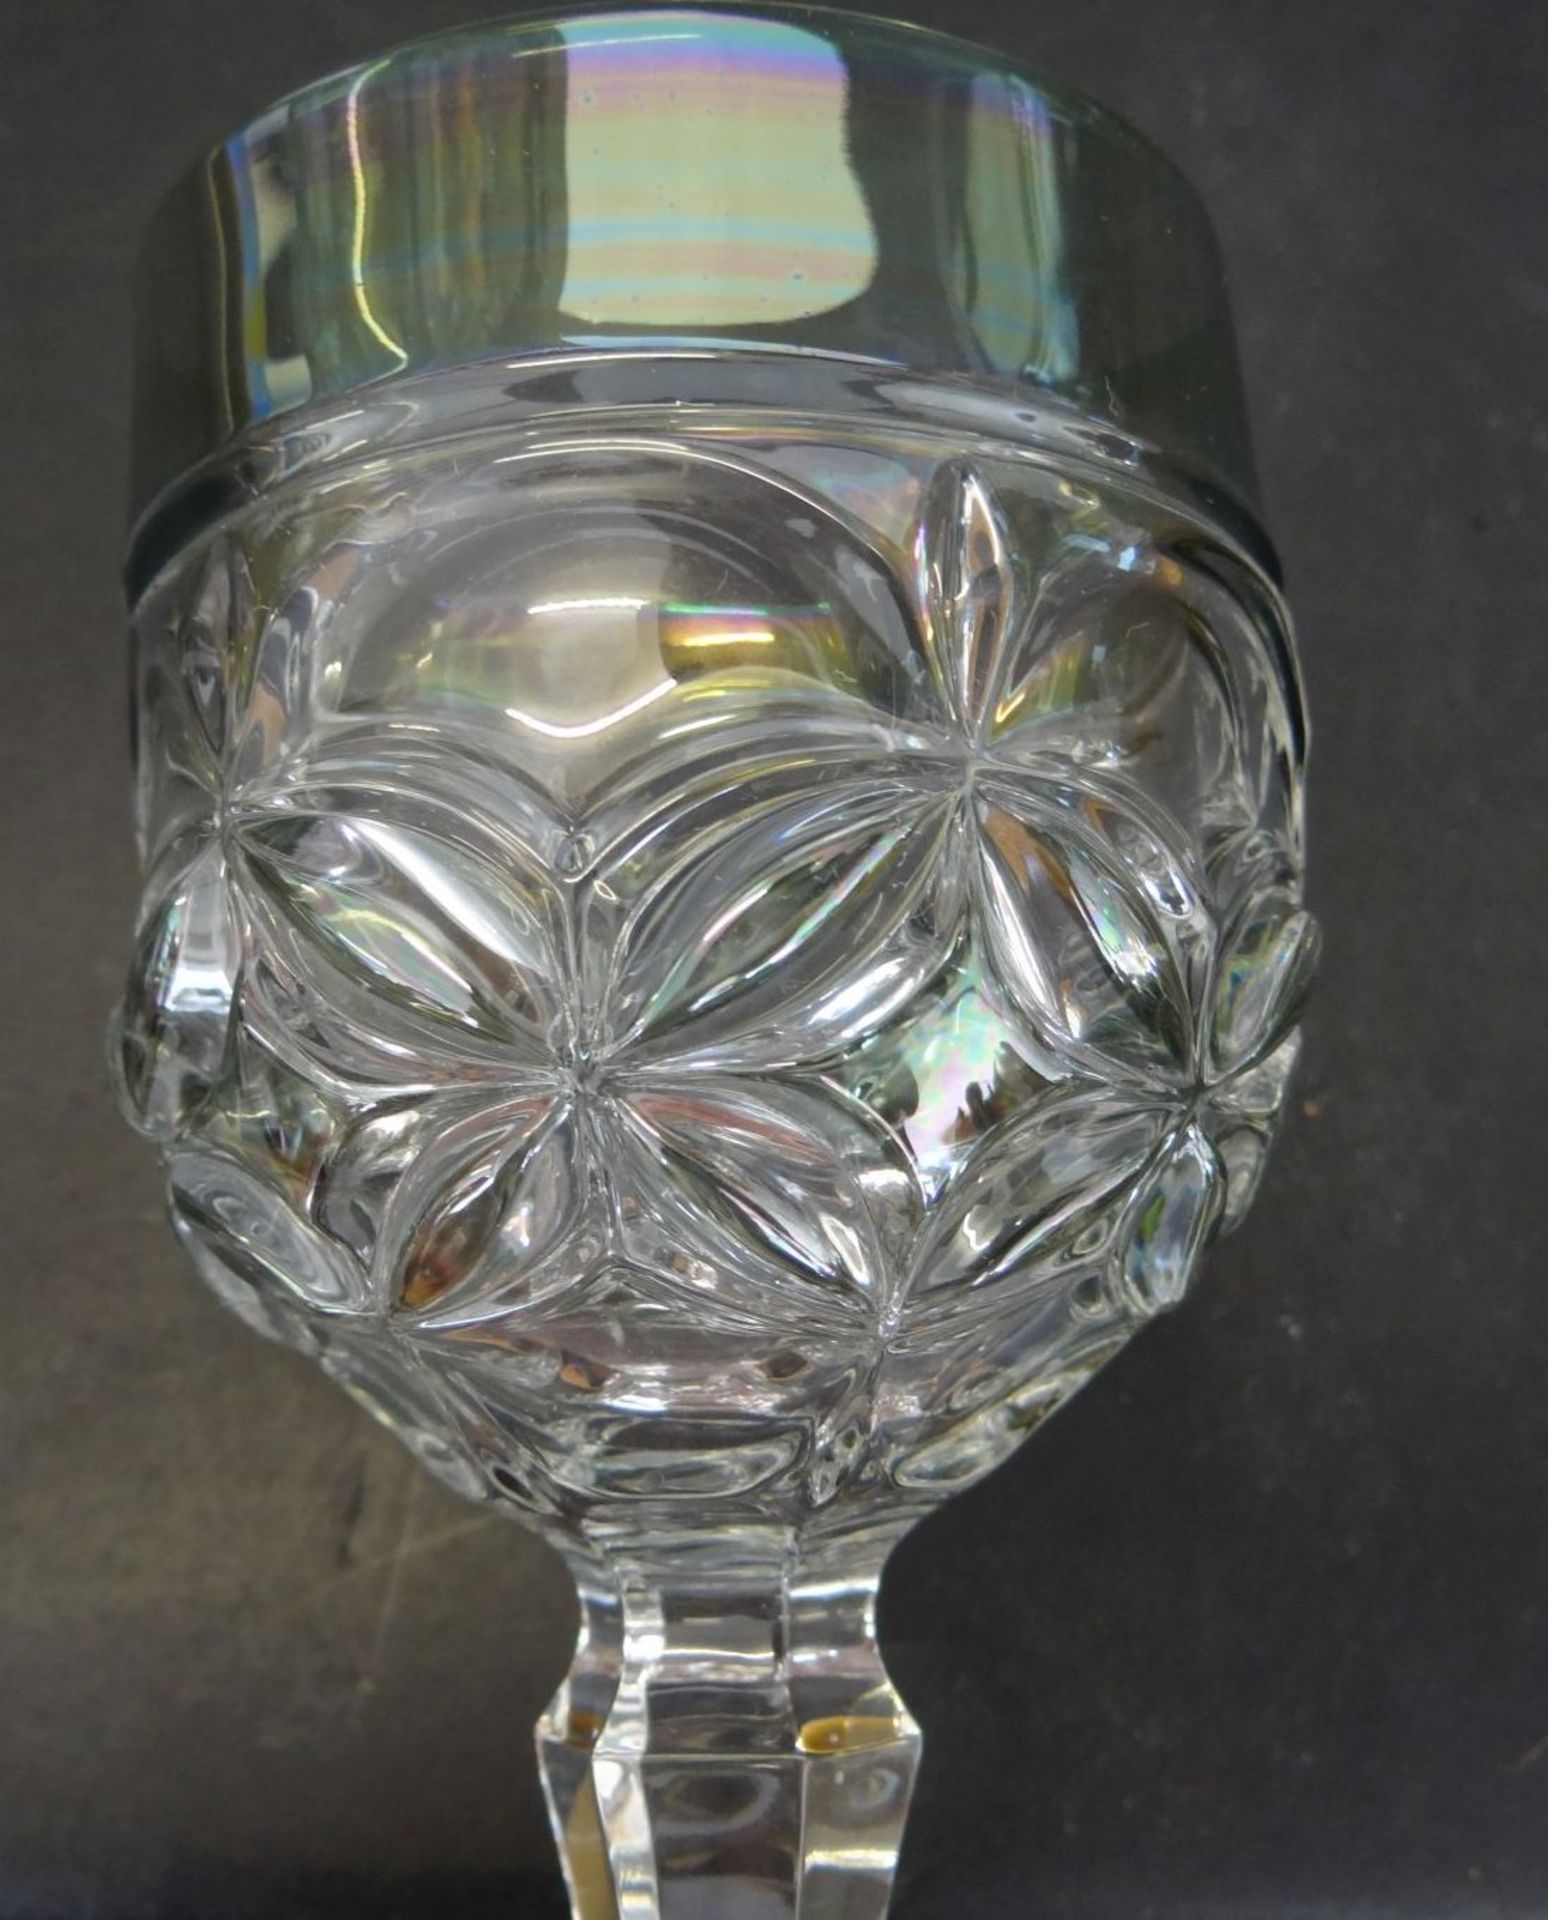 6 Presskristall Weingläser, bunt gebeizt, H-19 c - Bild 4 aus 4